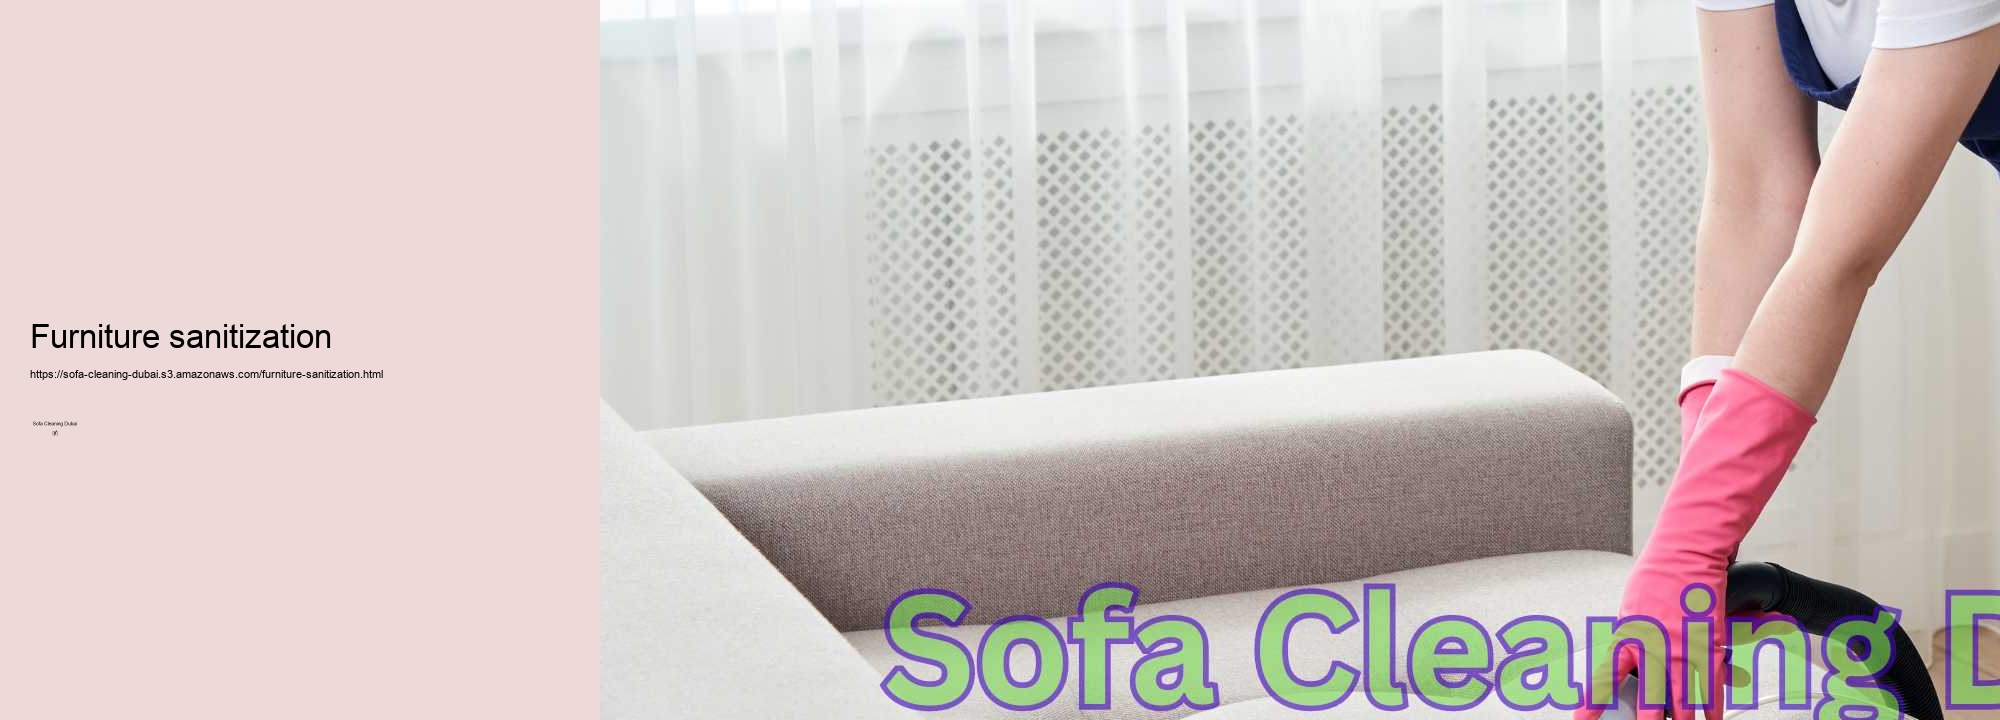 Furniture sanitization